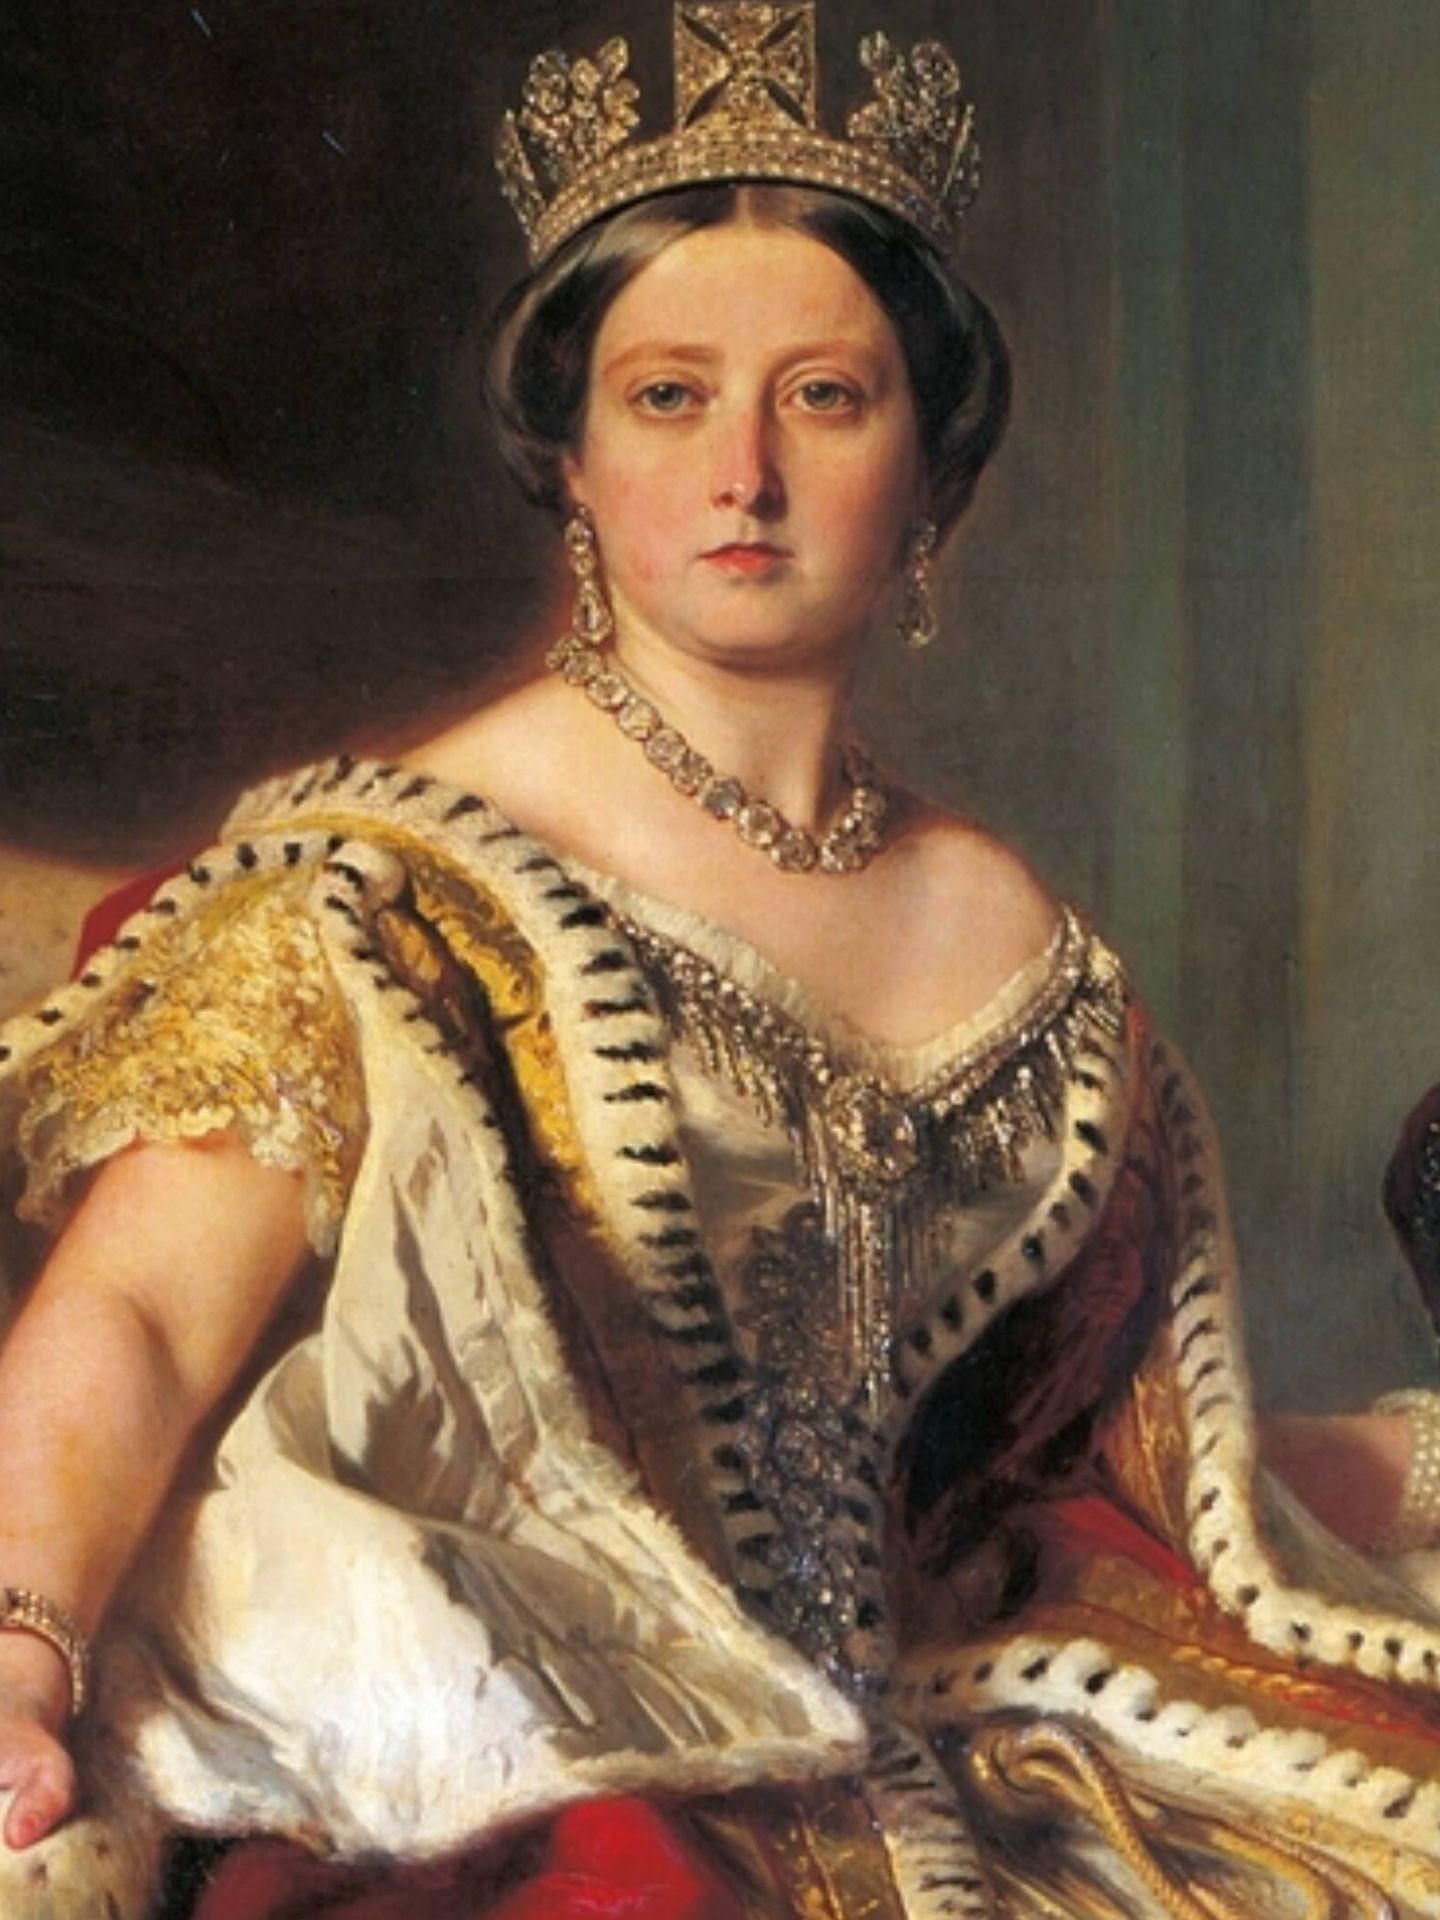 La reina Victoria de Inglaterra, la primera influencer de bodas, en un regio retrato de Franz Xaver Winterhalter. (Royal Collection Trust/Cortesía)